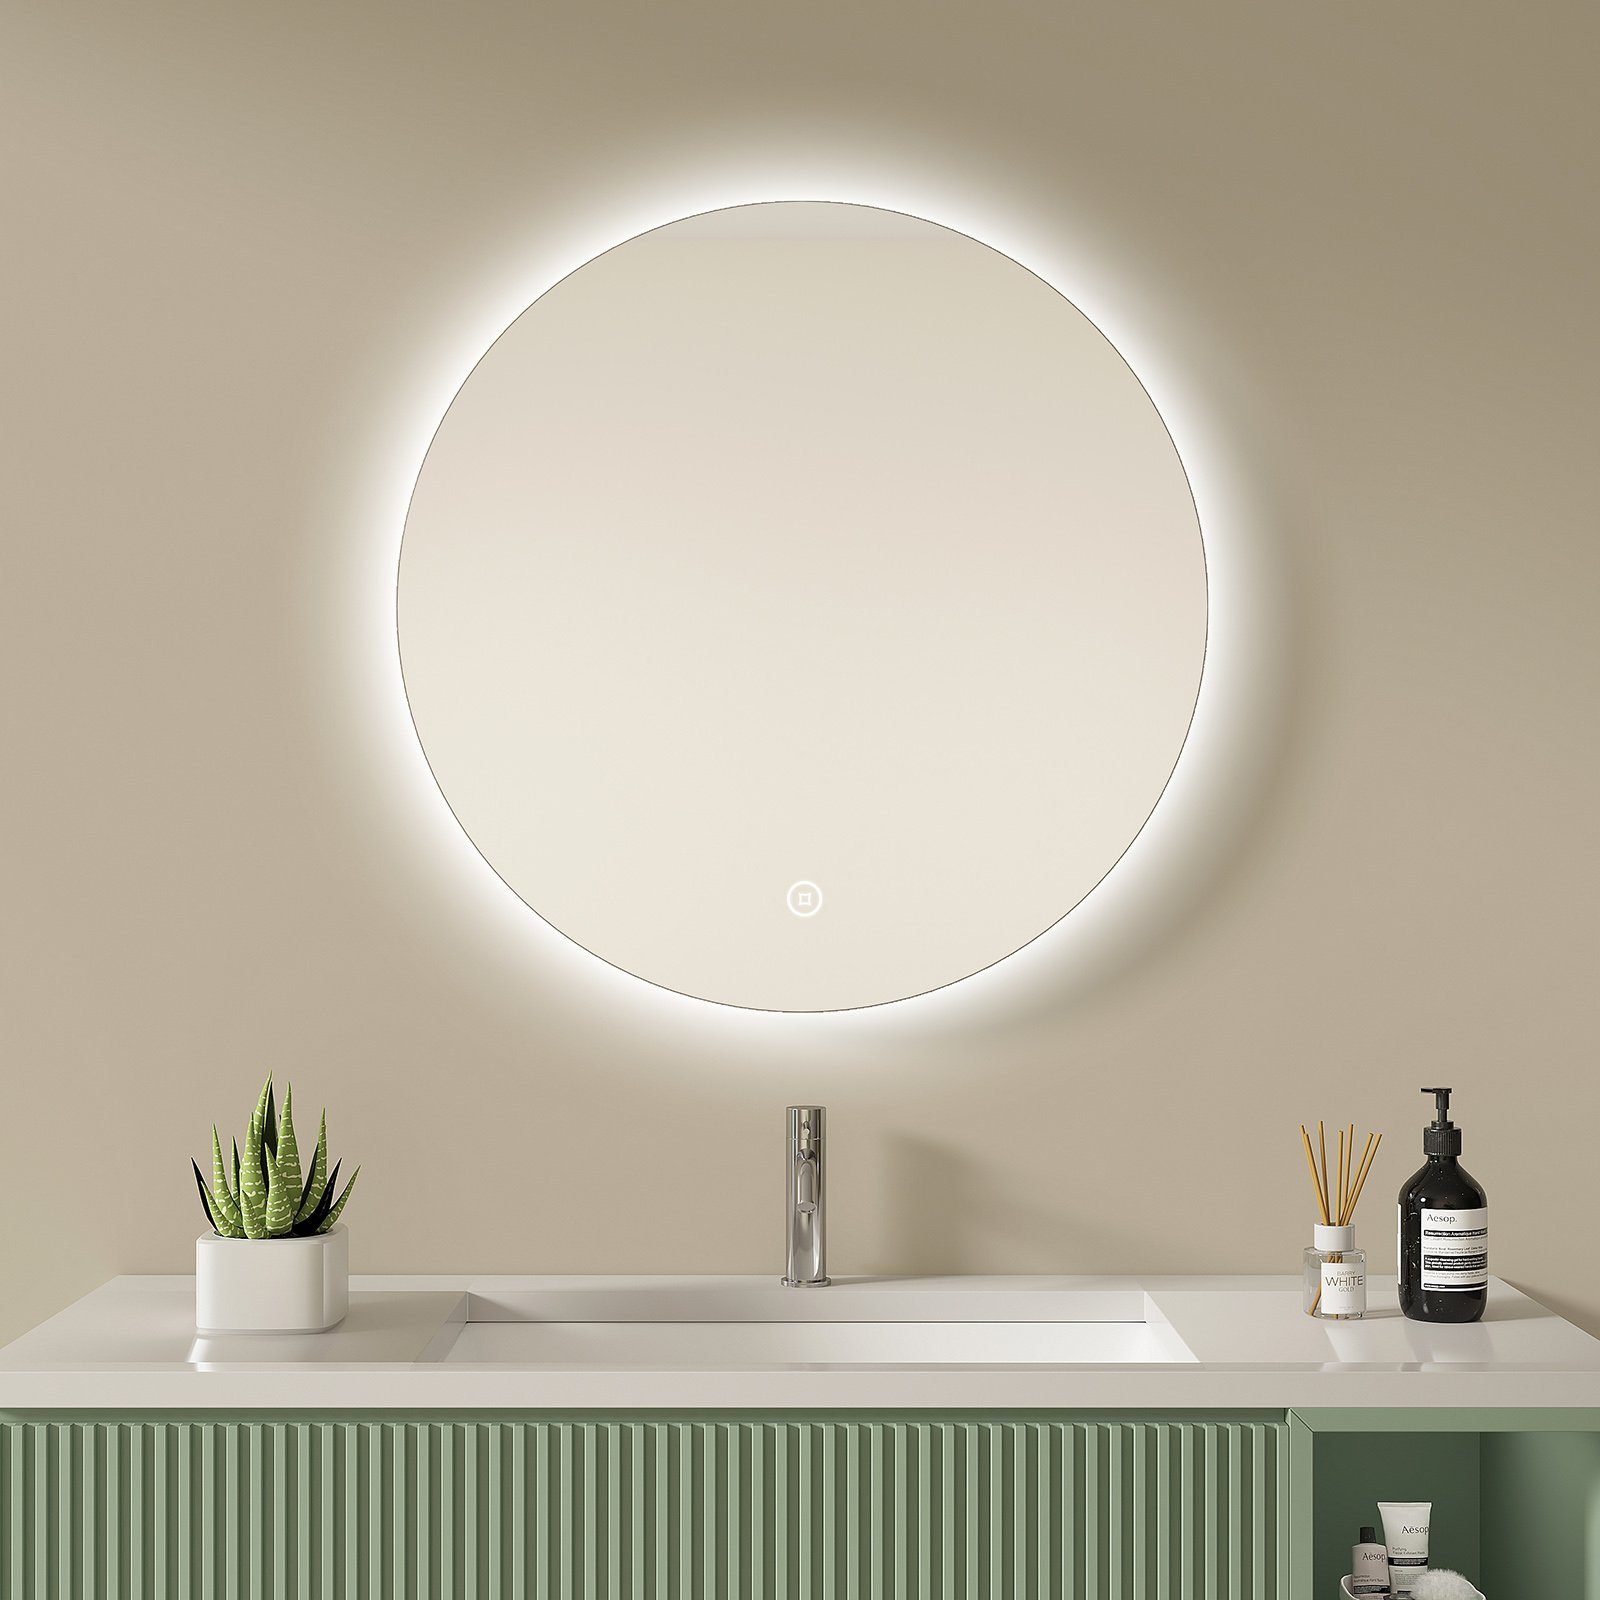 S'AFIELINA Badspiegel mit Beleuchtung Rund LED Wandspiegel Badezimmerspiegel, mit Touch, kaltweißes Licht und Memory Funktion